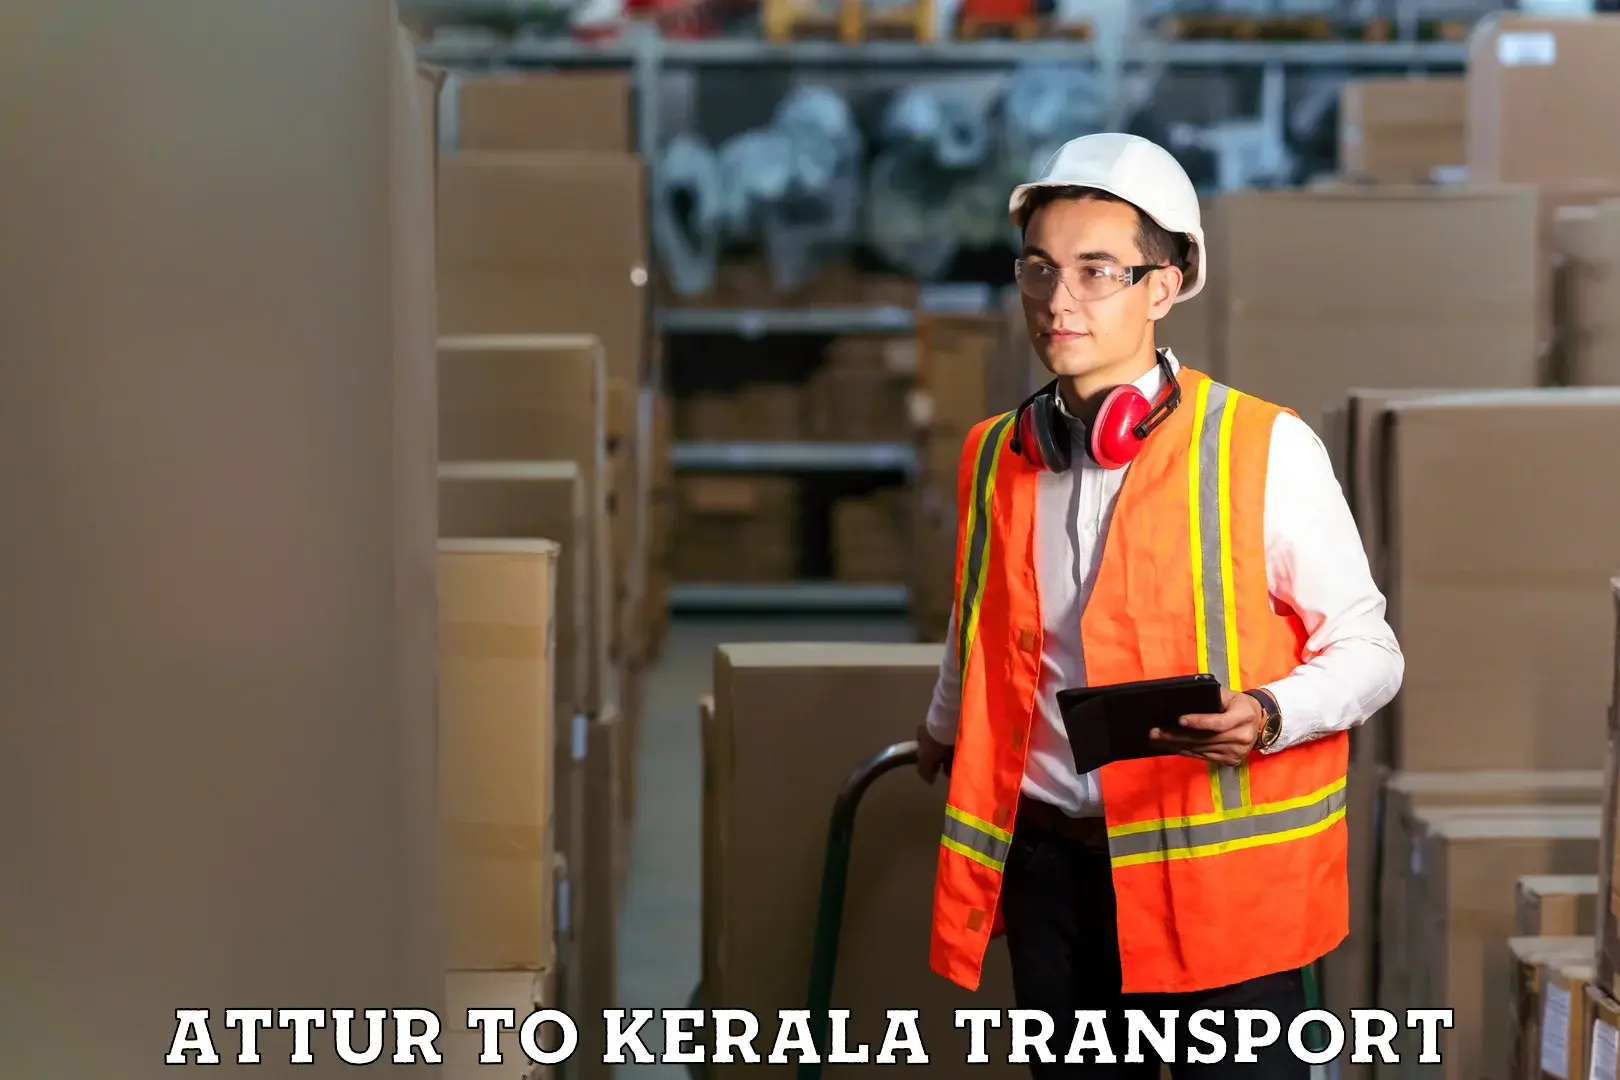 Transportation services Attur to Thrissur